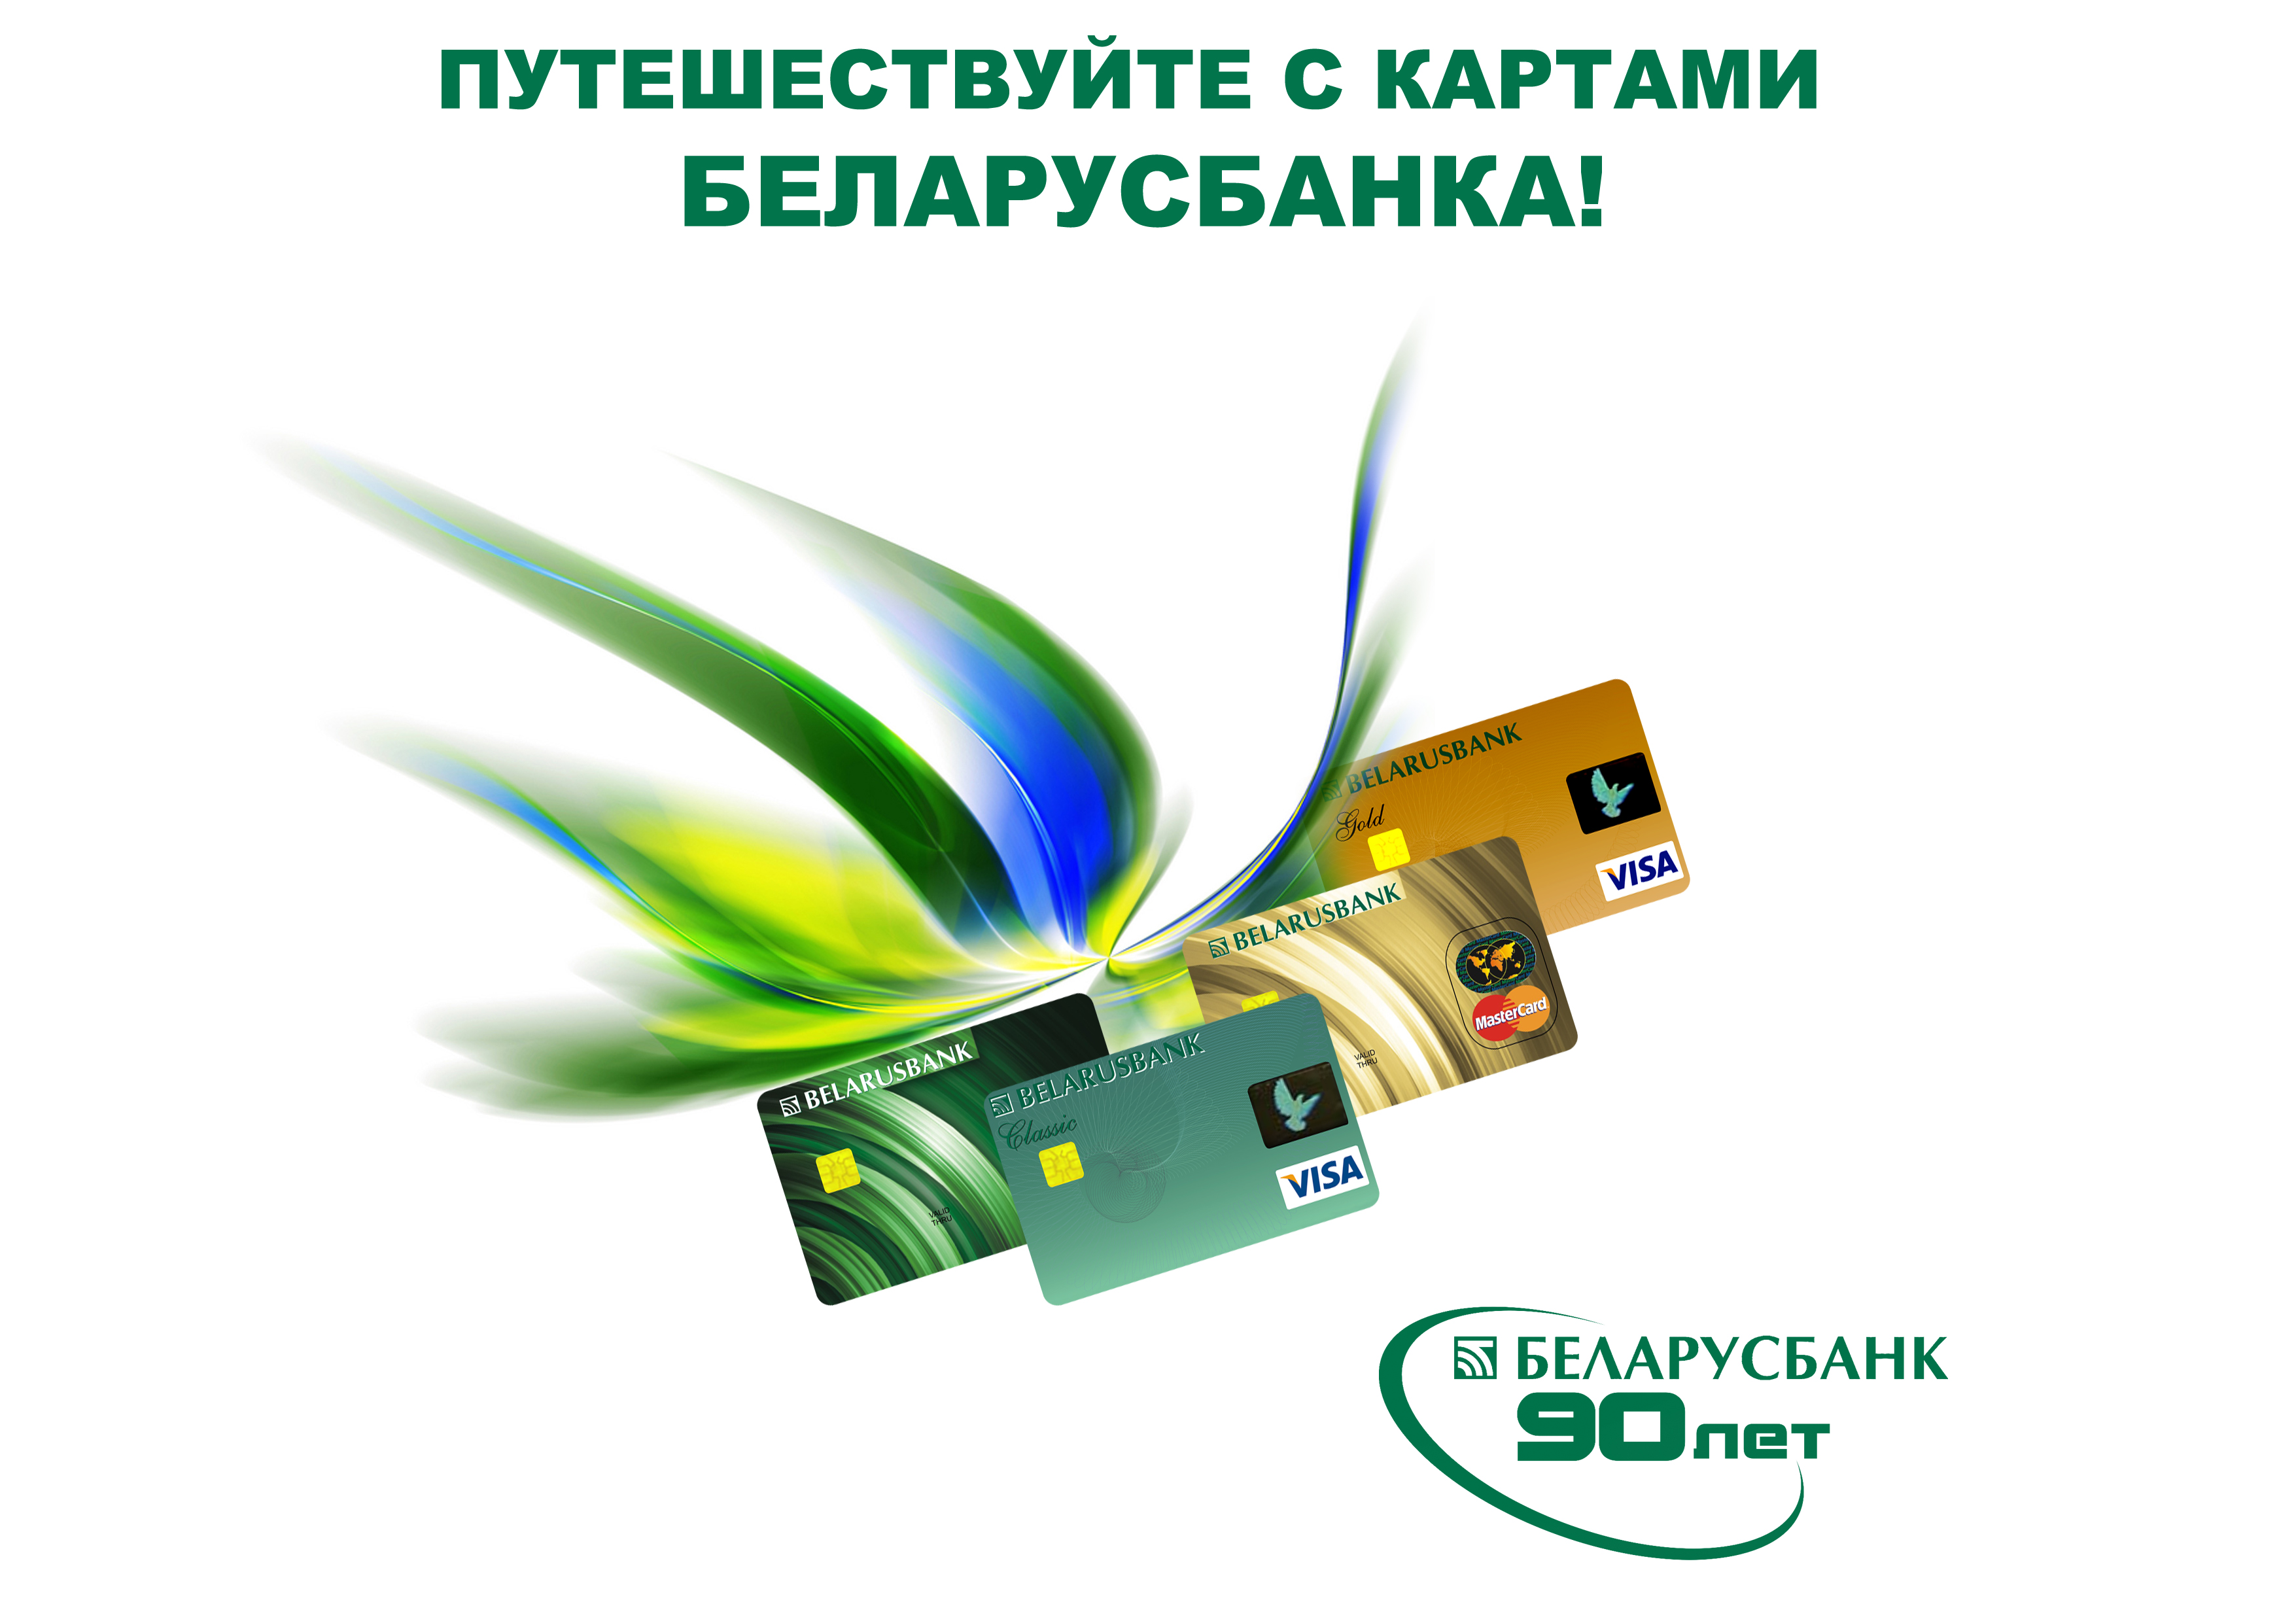 Беларусбанк с 13 апреля вводит изменения в обслуживании некоторых карточек